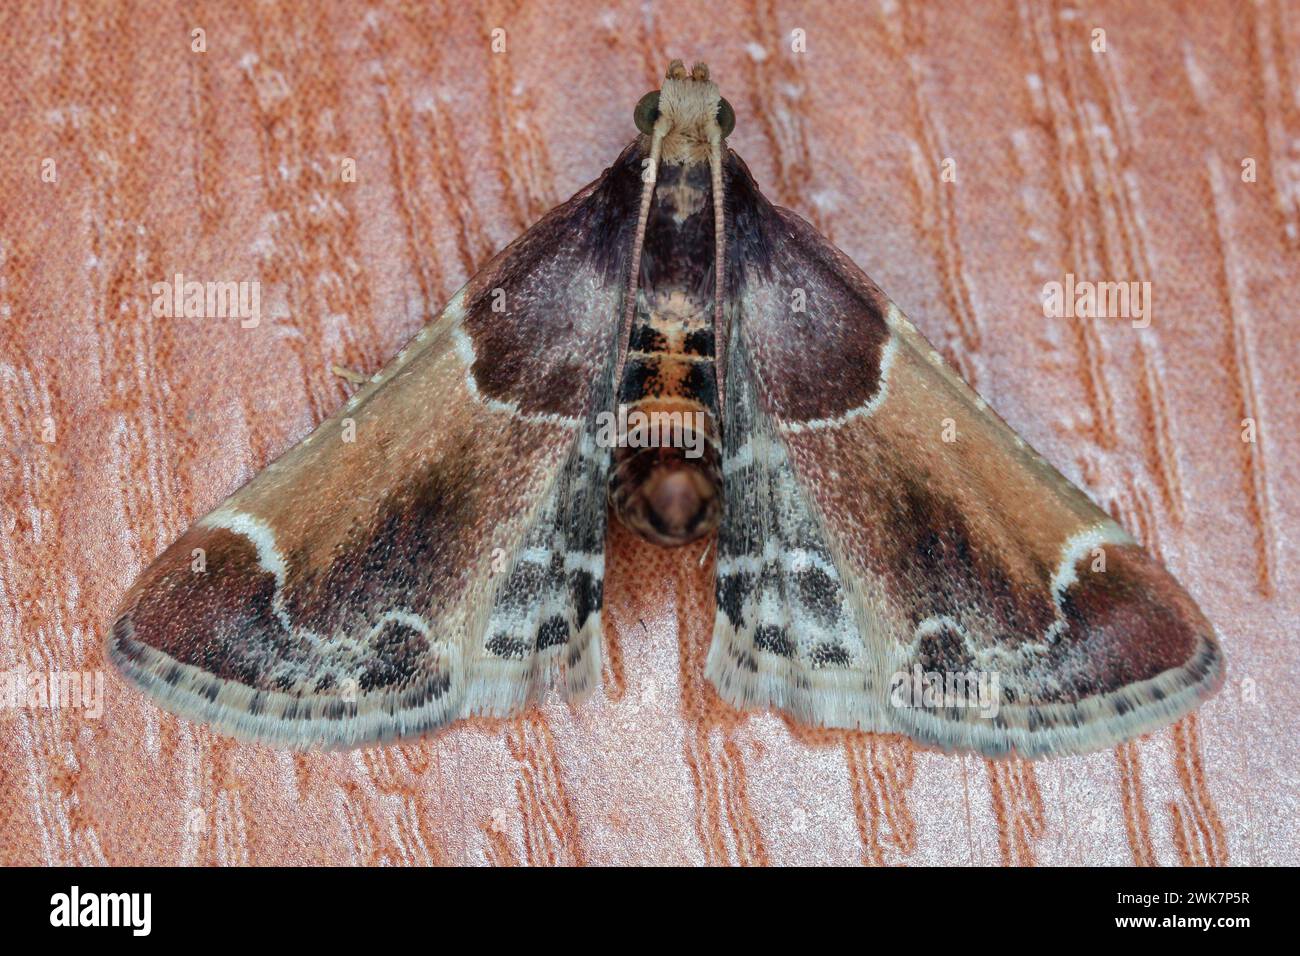 Die Mahlzeit Moth oder Mahlzeit Snout Moth (Pyralis farinalis) ein kosmopolitischer Moth der Familie Pyralidae. Raupen sind Schädlinge von gelagerten Lebensmitteln. Stockfoto